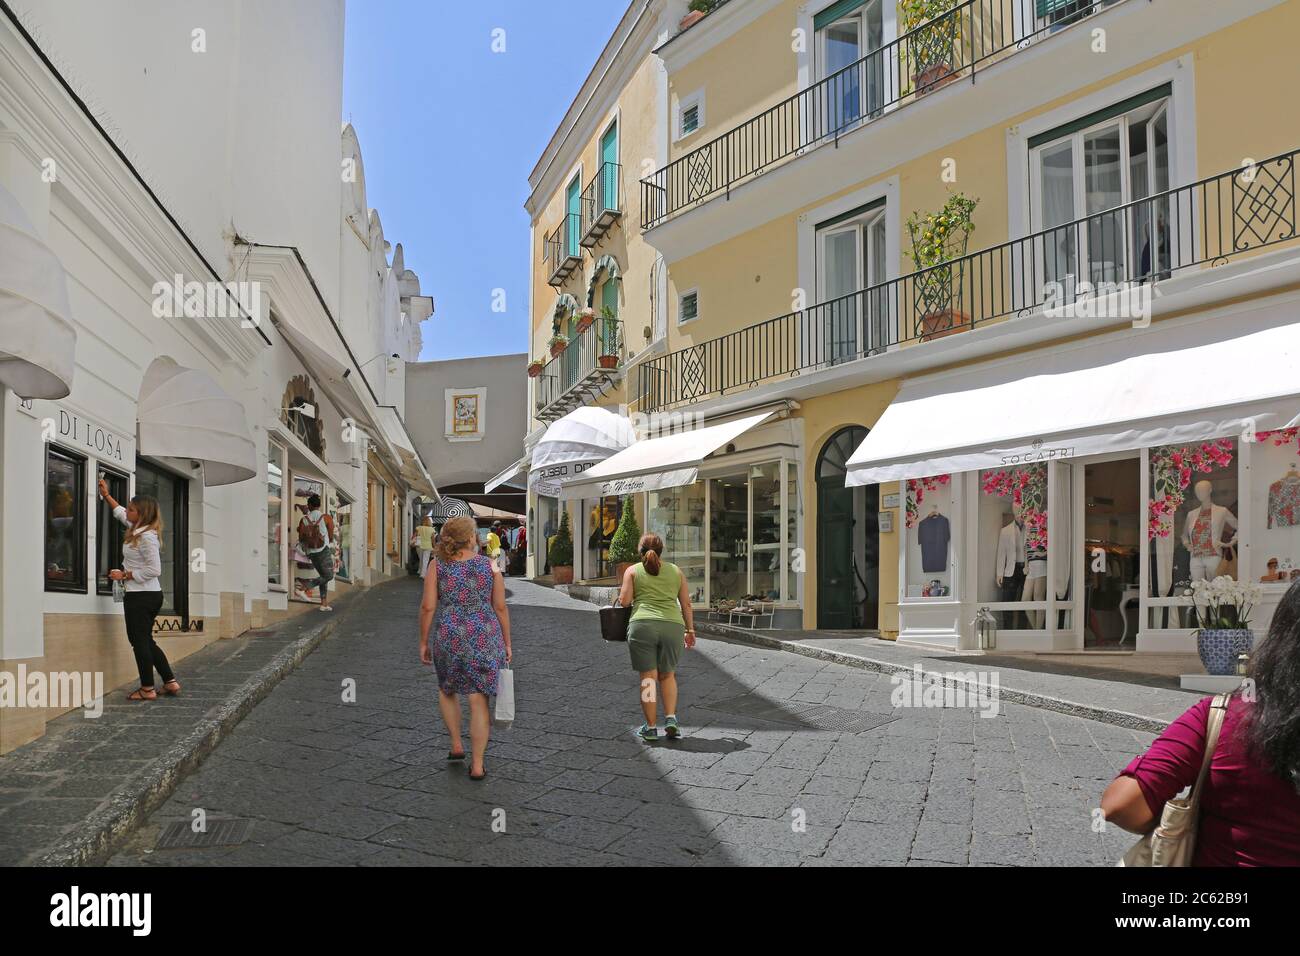 Capri, Italie - 26 juin 2014 : peu de touristes marchant dans la rue Hot Summer Day à Capri Island, Italie. Banque D'Images